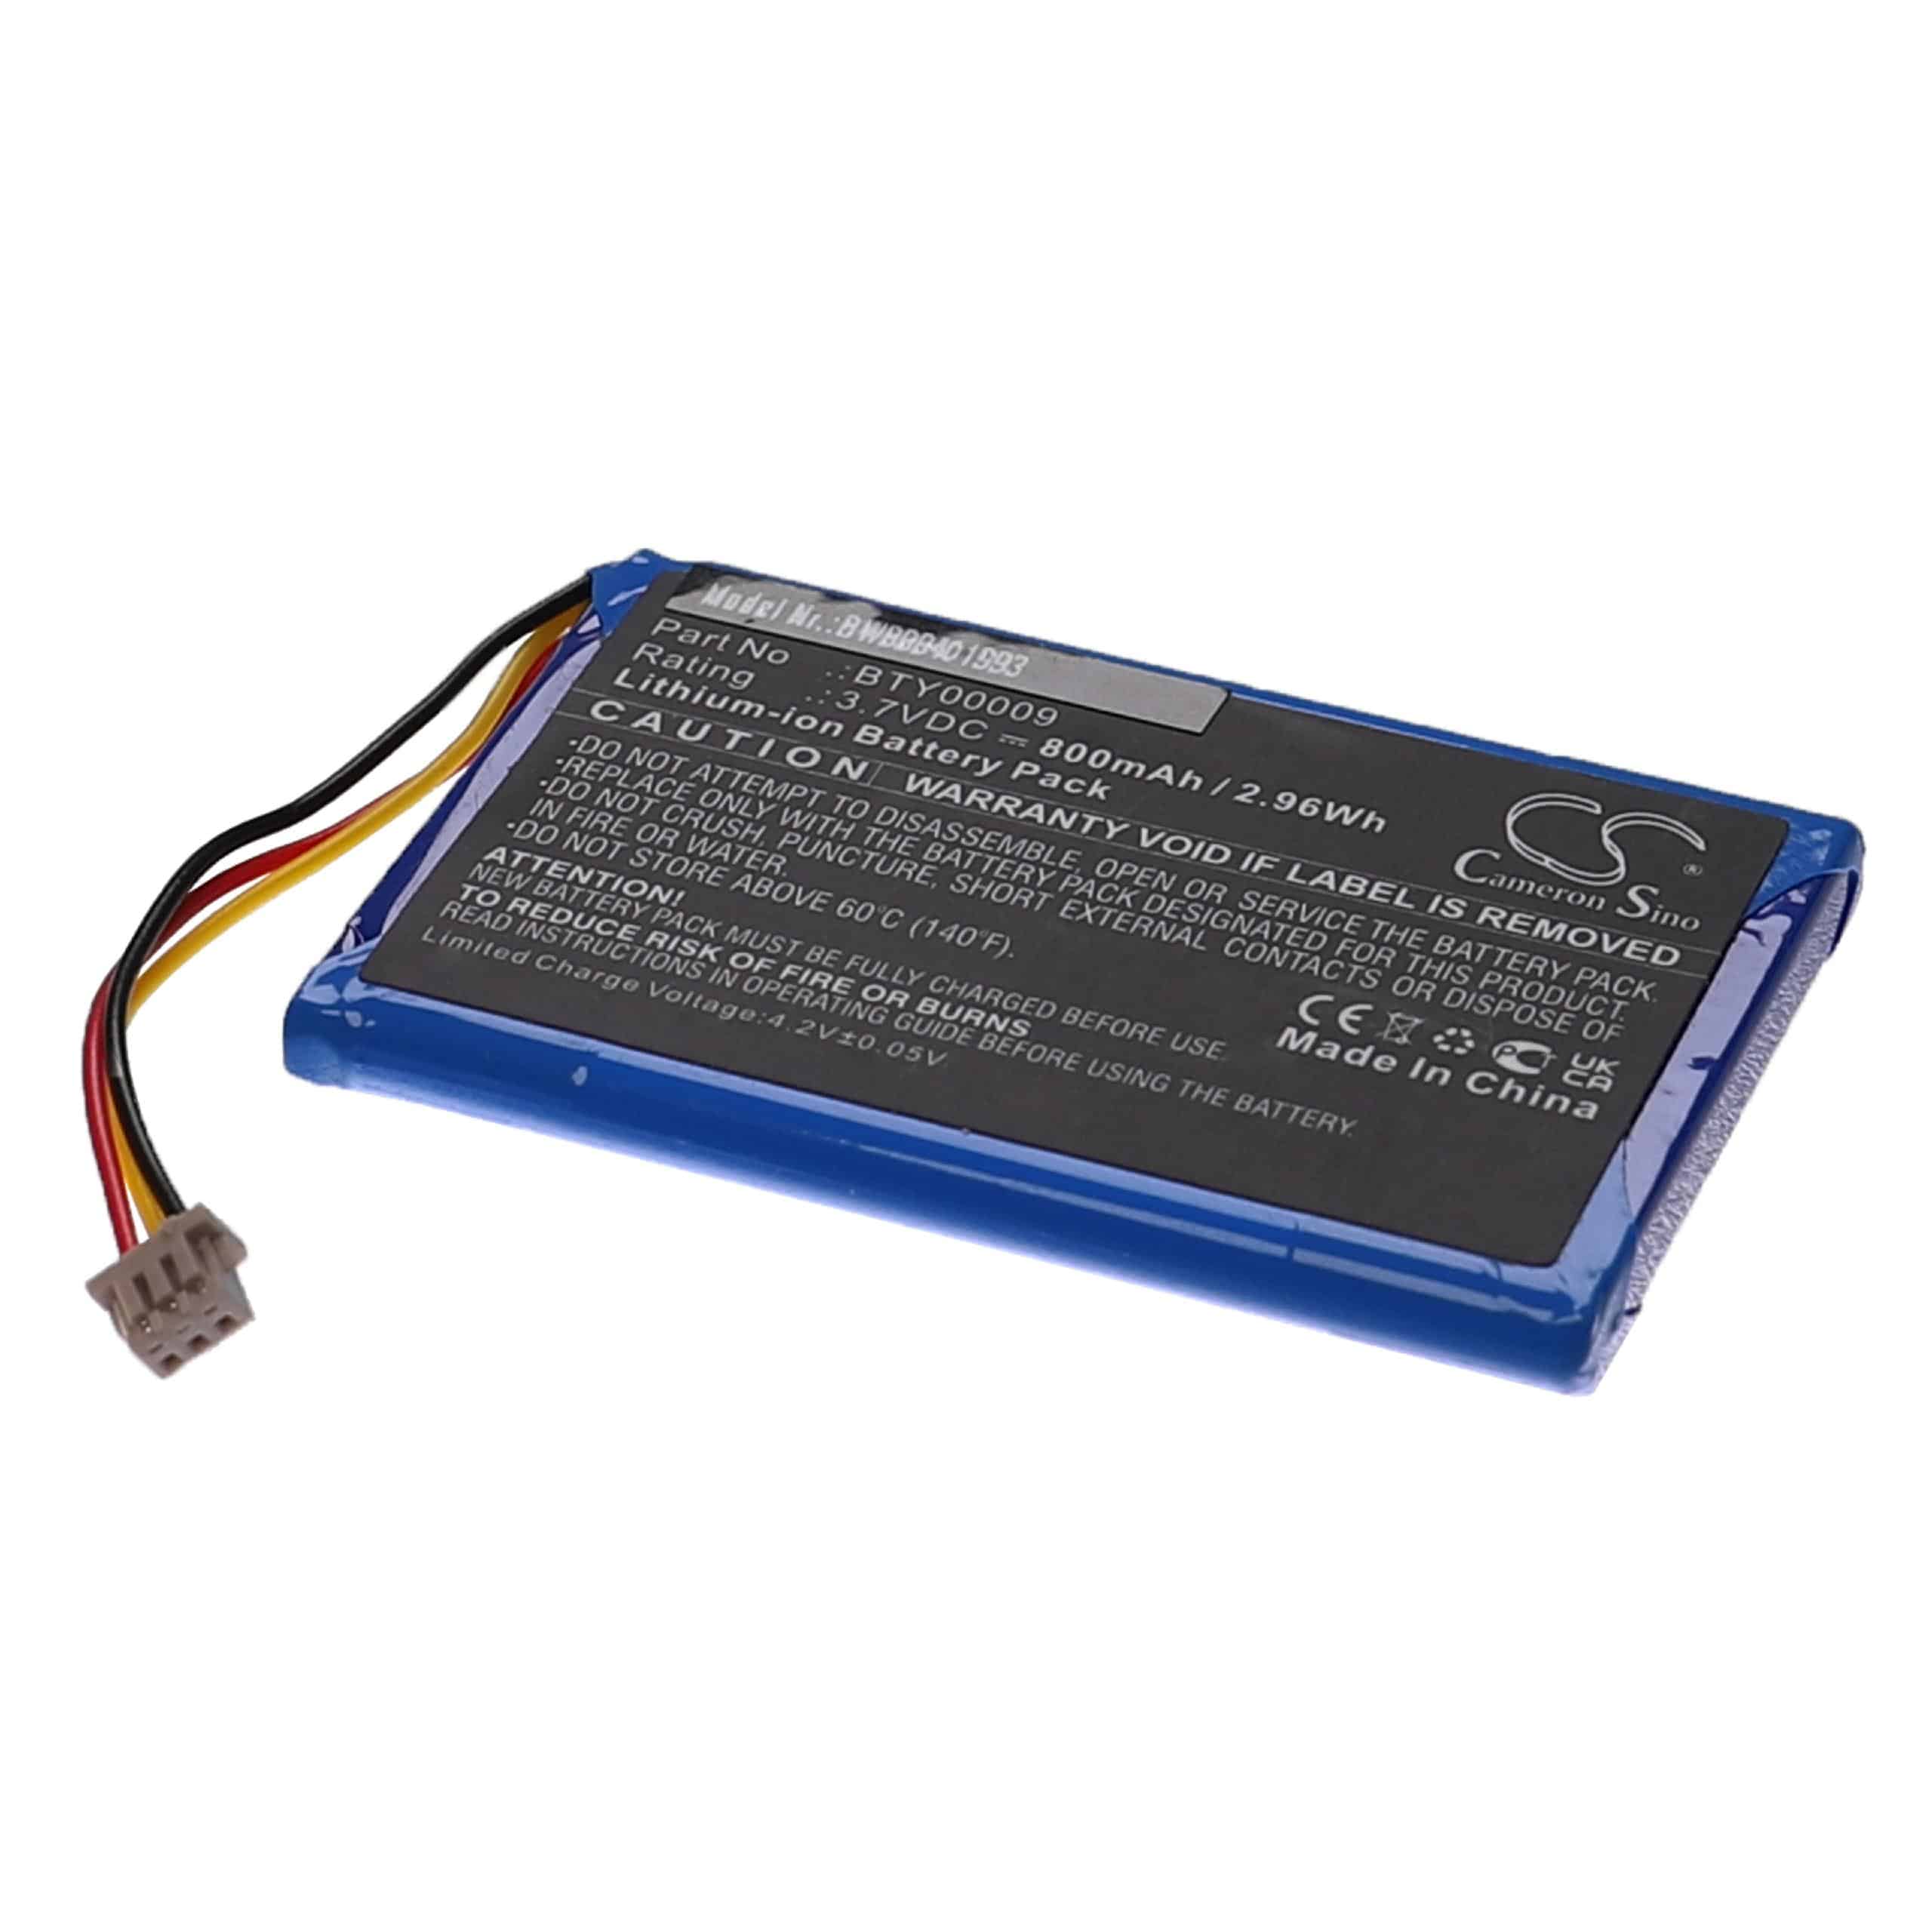 Batterie remplace Ingenico BTY00009, FPS16020002419 pour lecteur de carte - 800mAh 3,7V Li-ion